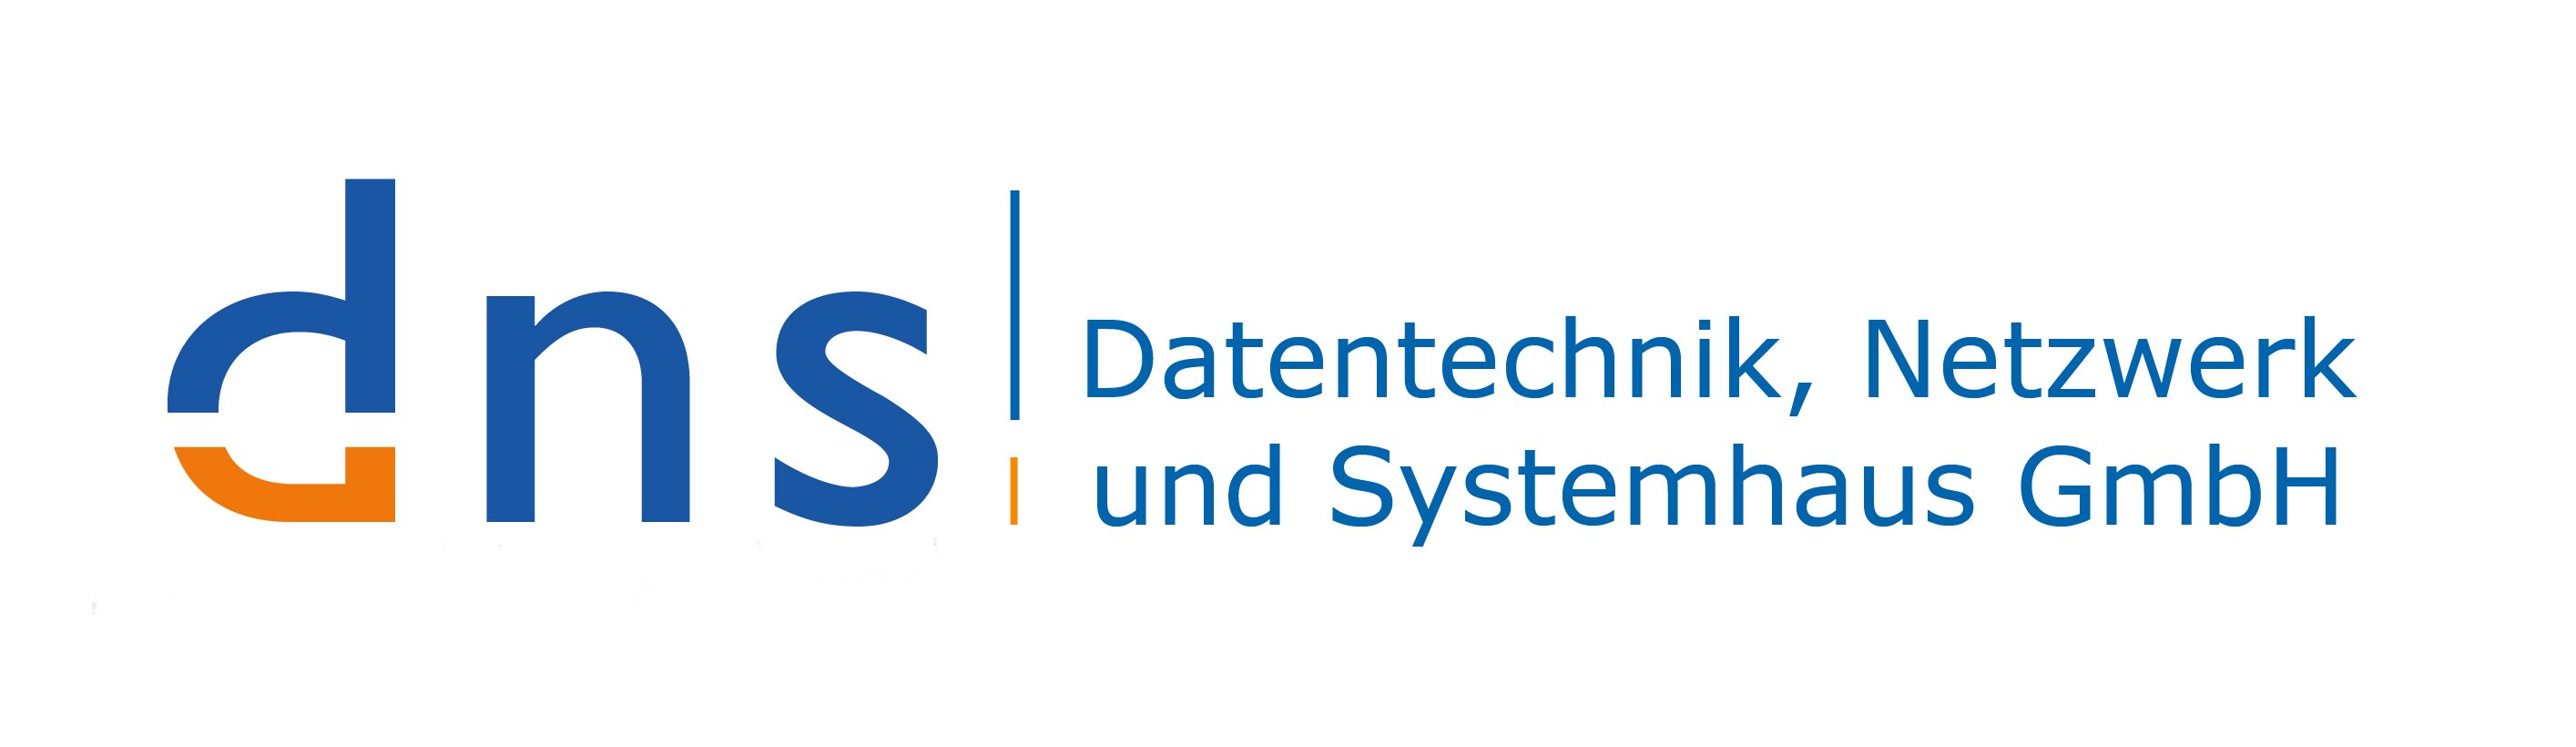 DNS Datentechnik, Netzwerk und Systemhaus GmbH